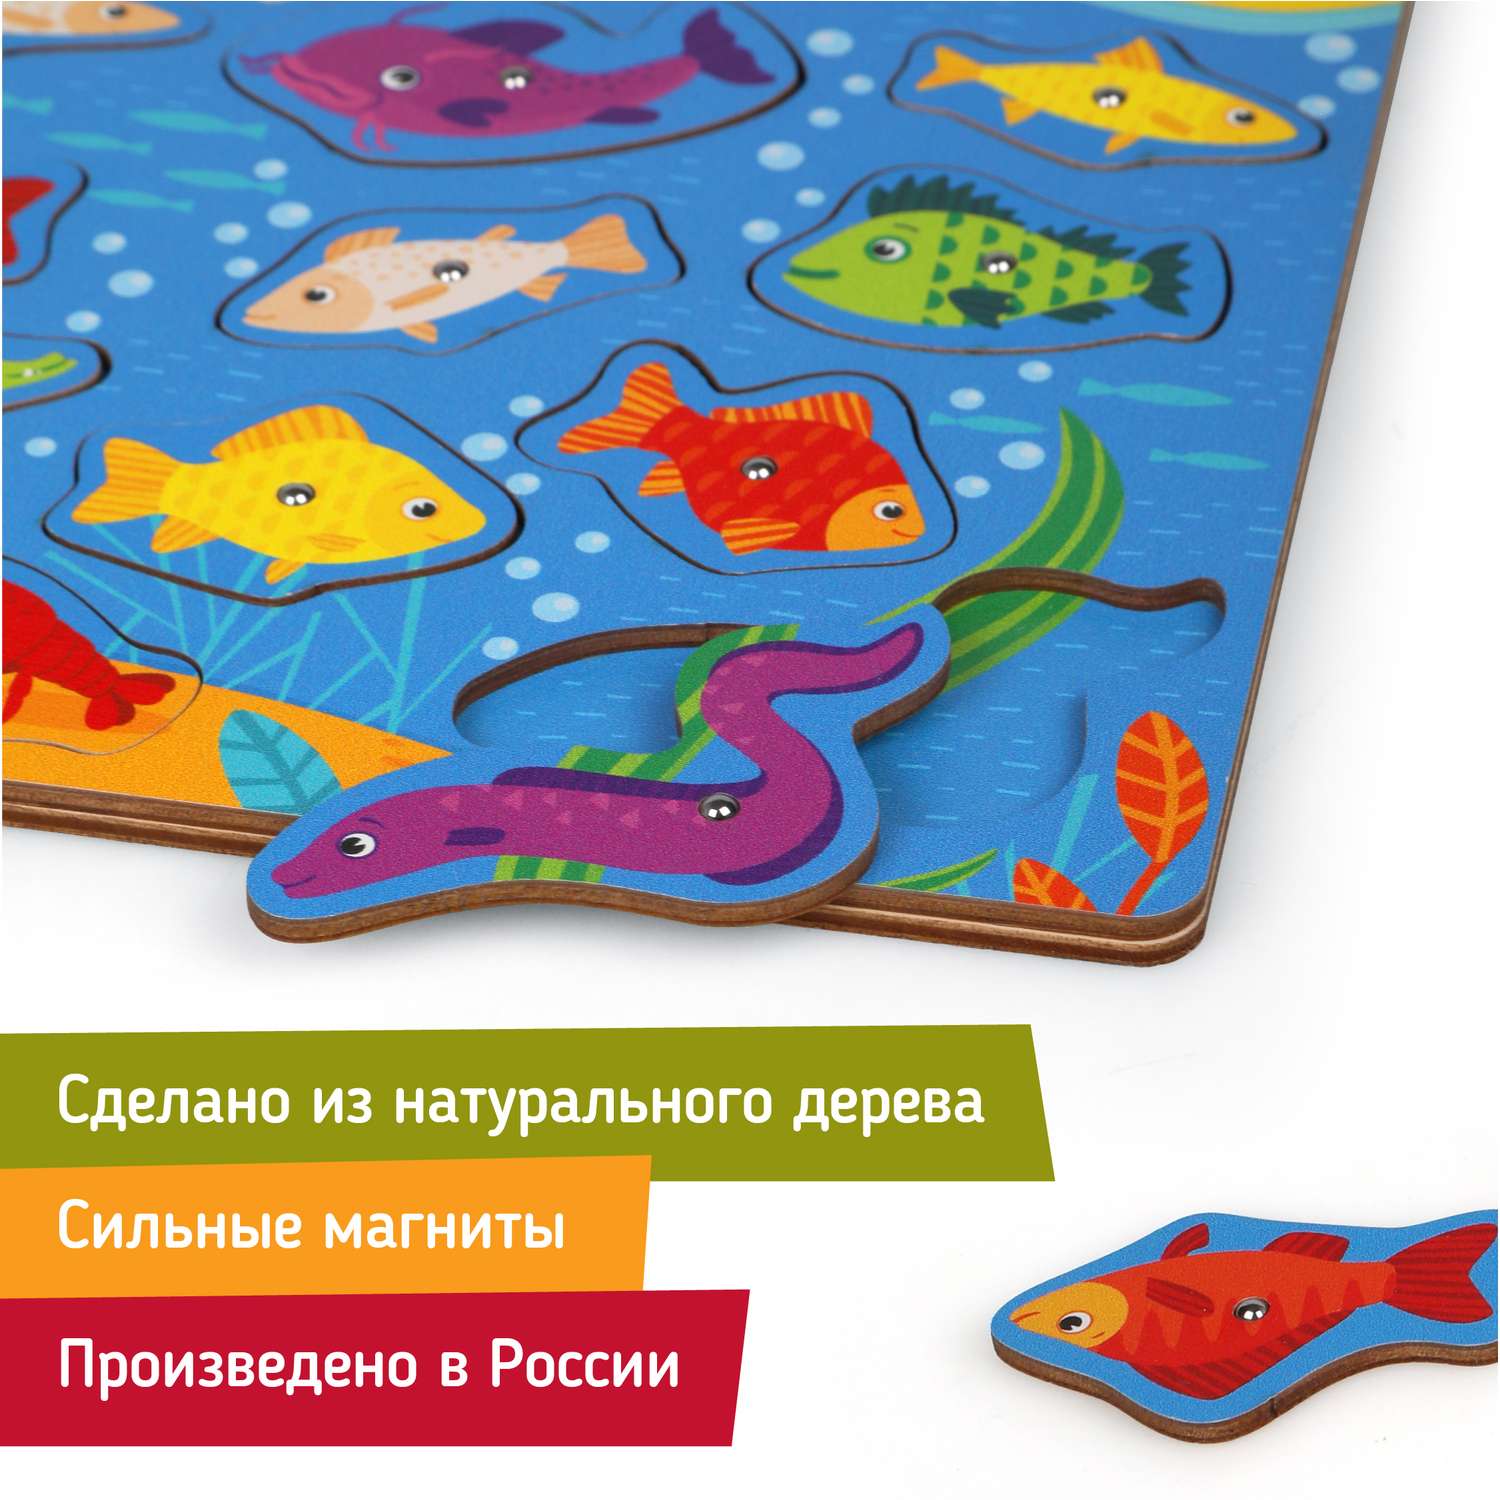 Развивающая игра Mapacha для детей деревянная рыбалка вкладыши Котики - фото 3